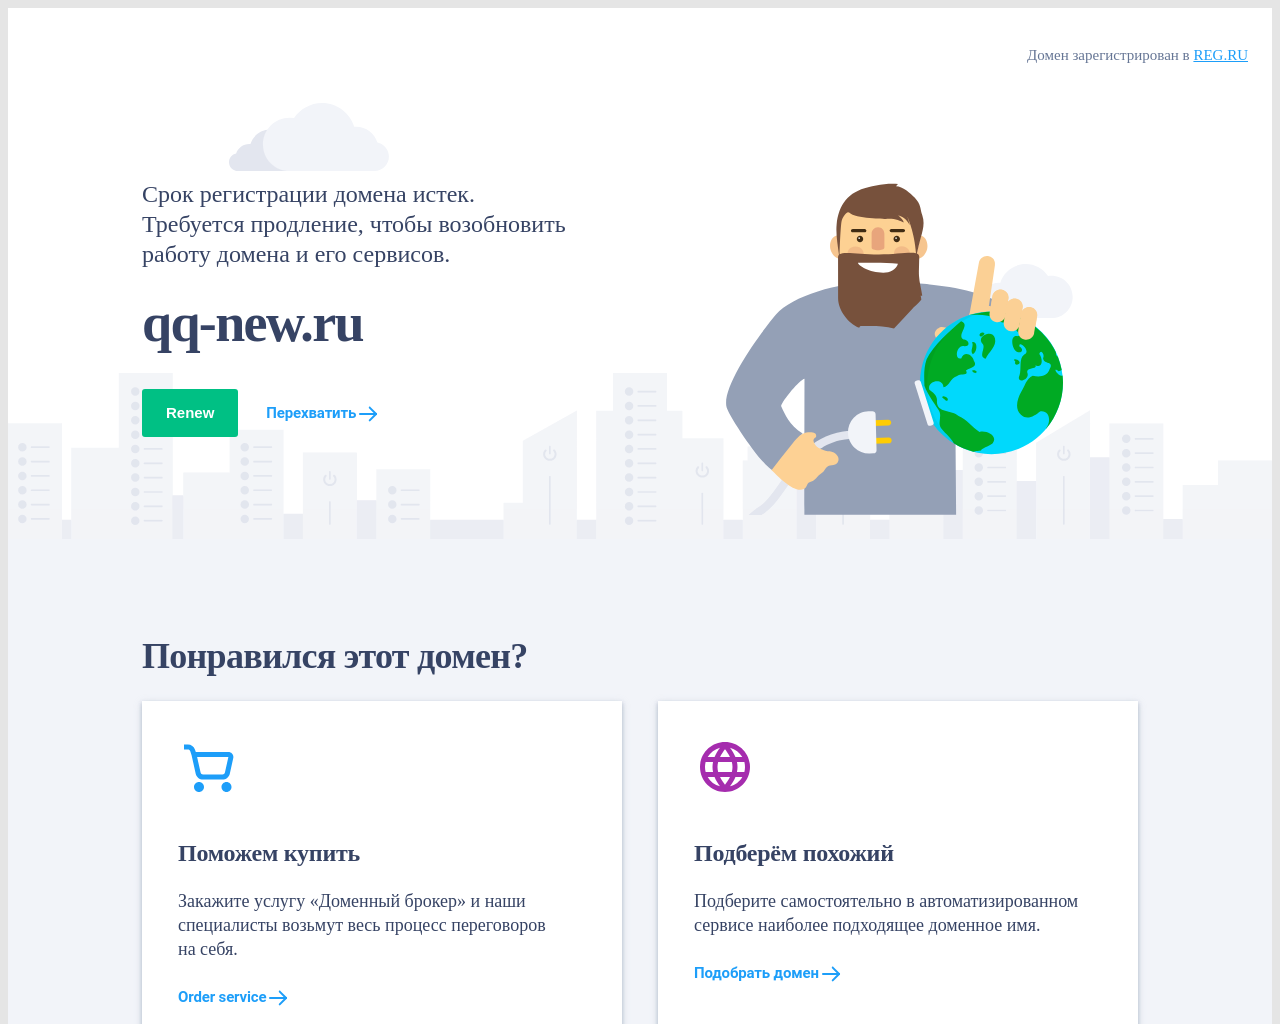 qq-new.ru